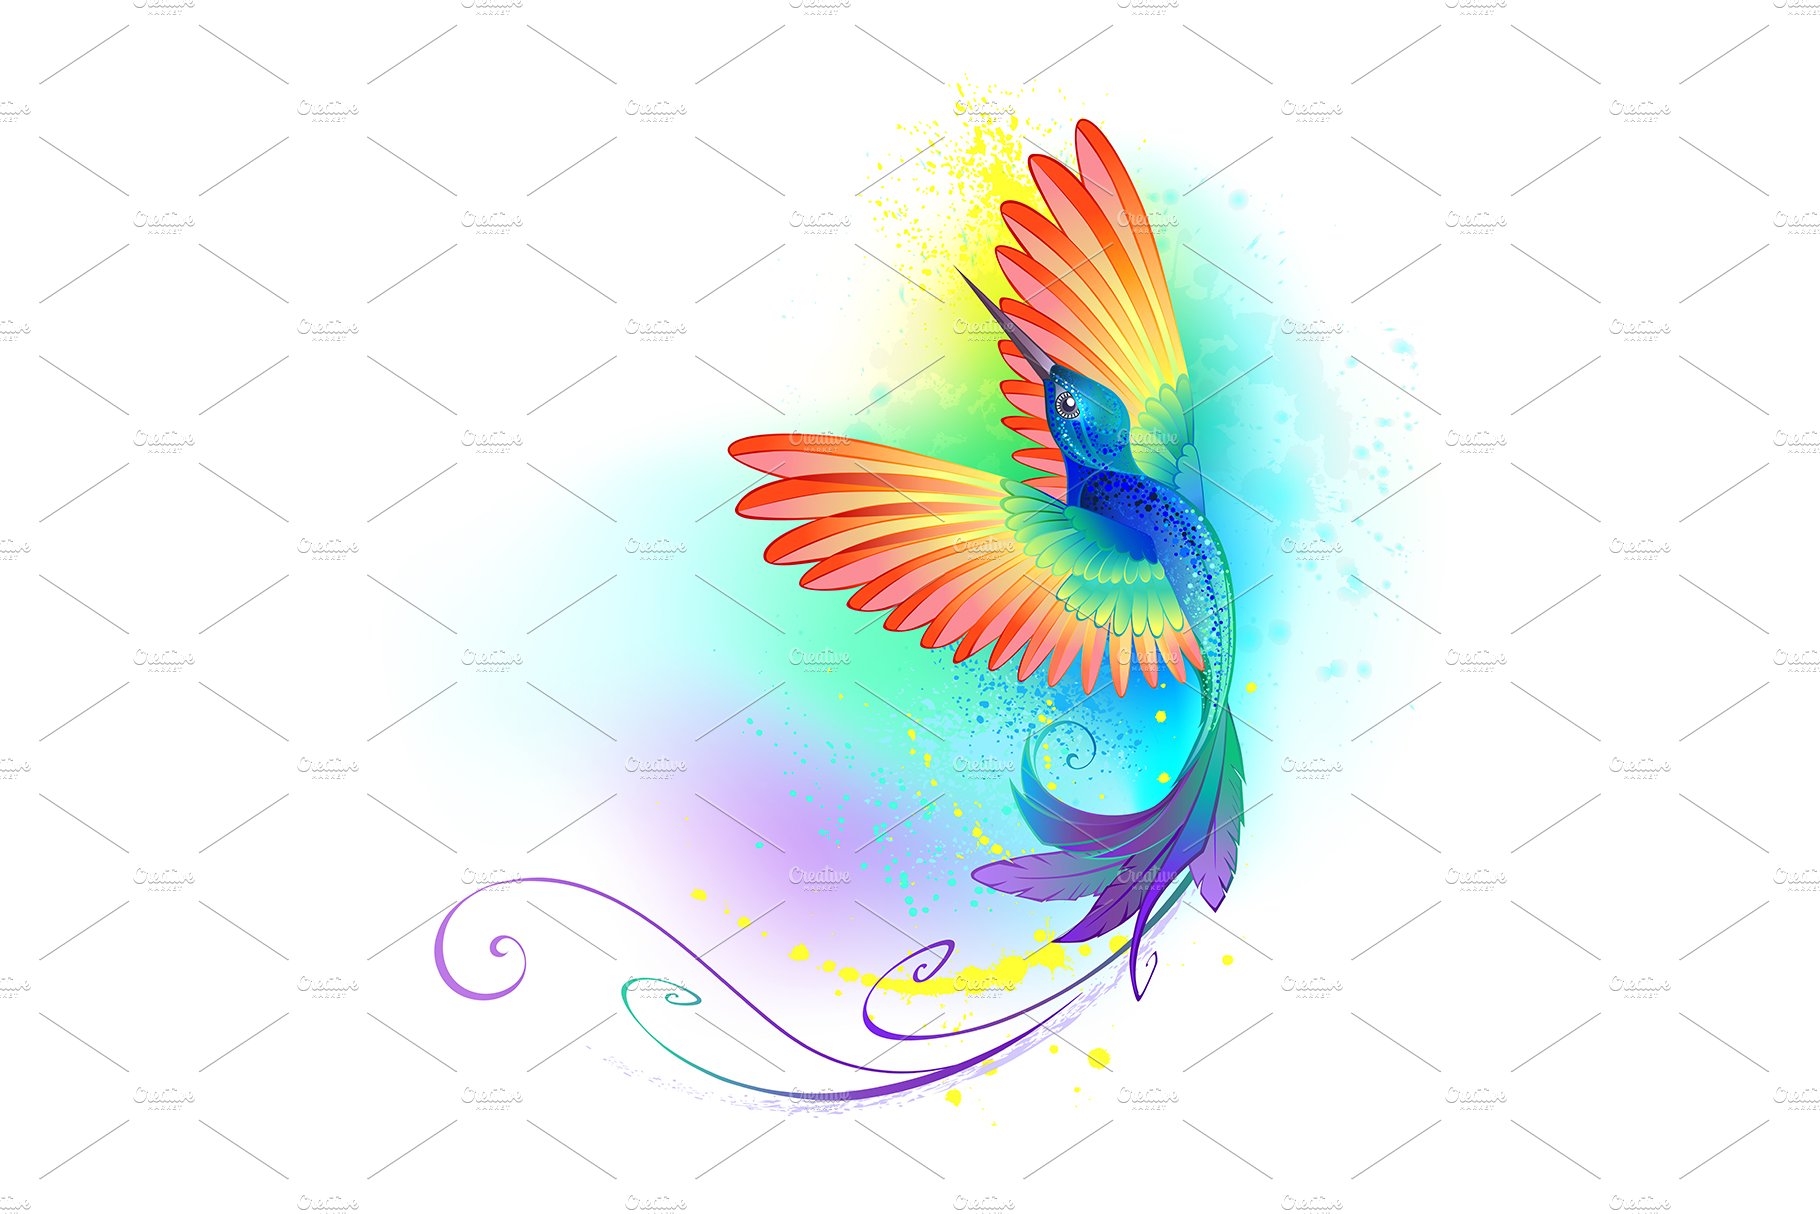 Splendid Rainbow Hummingbird cover image.